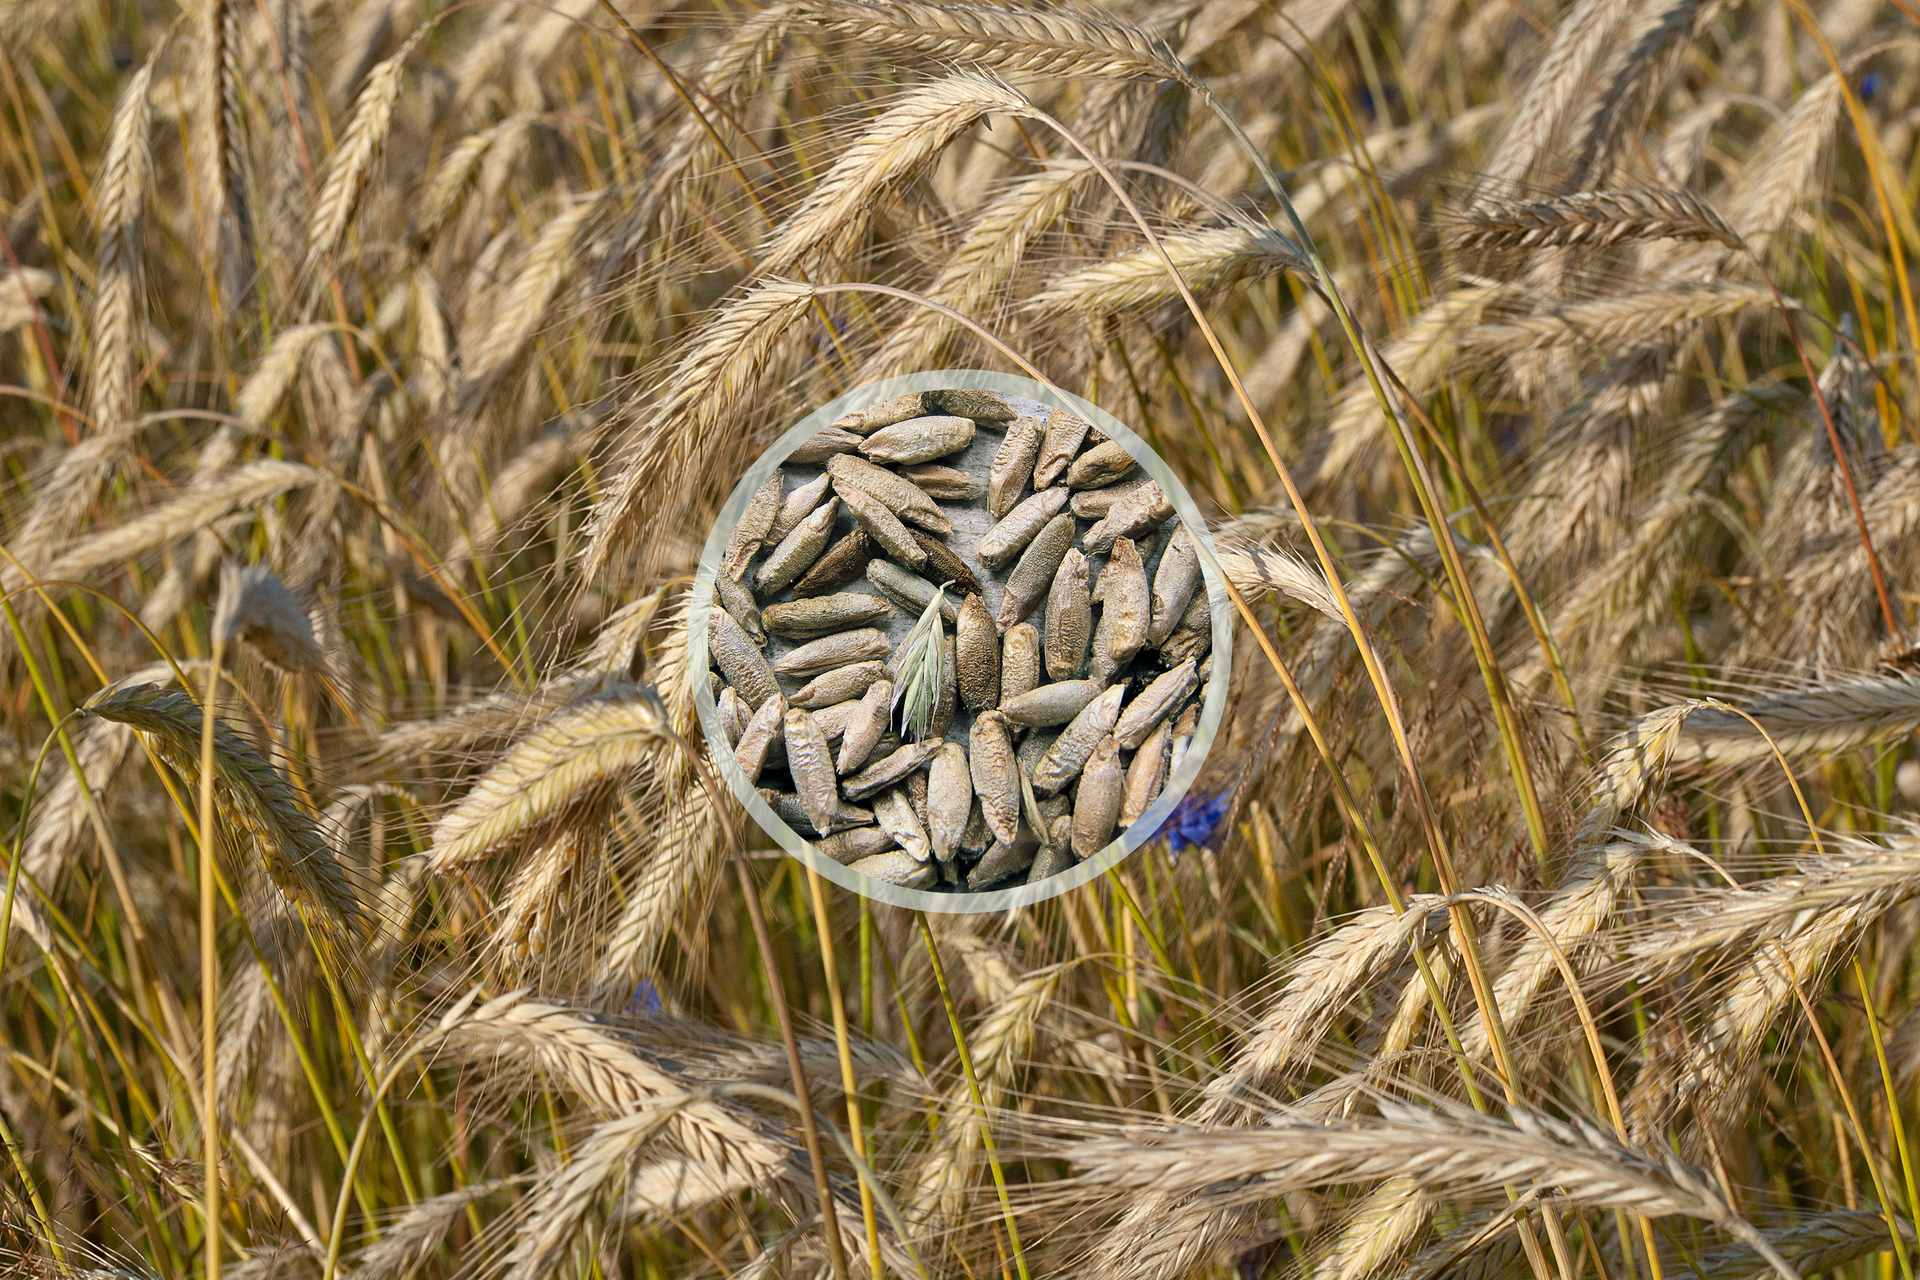 Fotografia przedstawia łan żyta. Ukazano pochylone kłosy z licznymi nasionami z ośćmi. W centrum nałożone zbliżenie szarych, podłużnych ziaren.